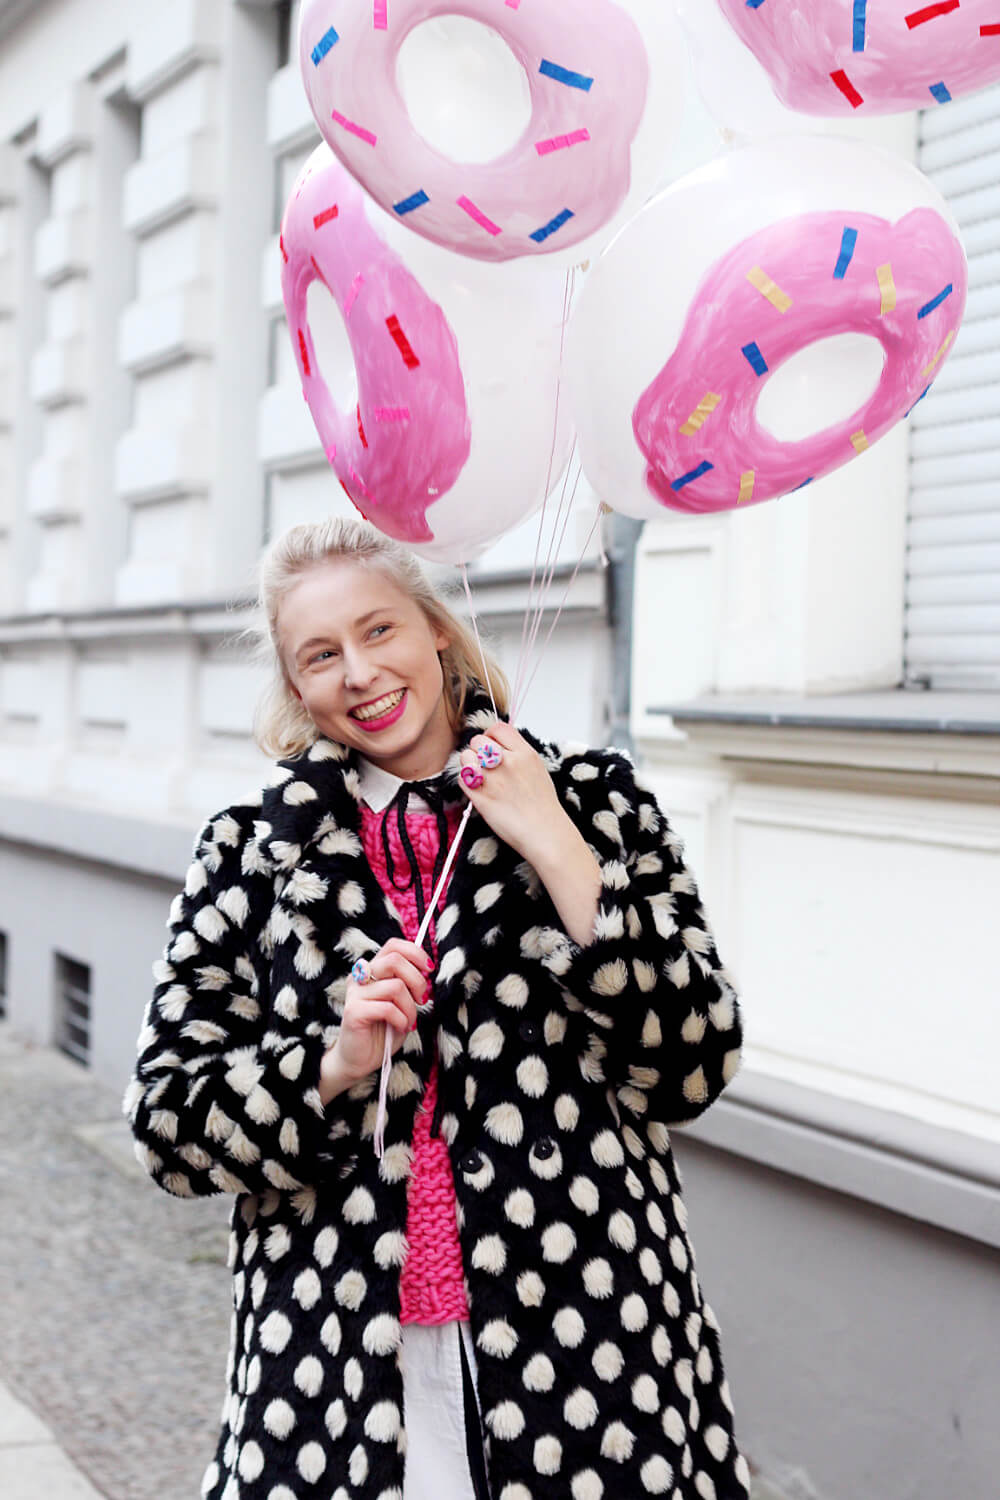 DIY-Donut-Ballons-selber-machen-gepunkteter-Mantel-Berlin-Streetstyle-Outfit-DIY-Blog-5